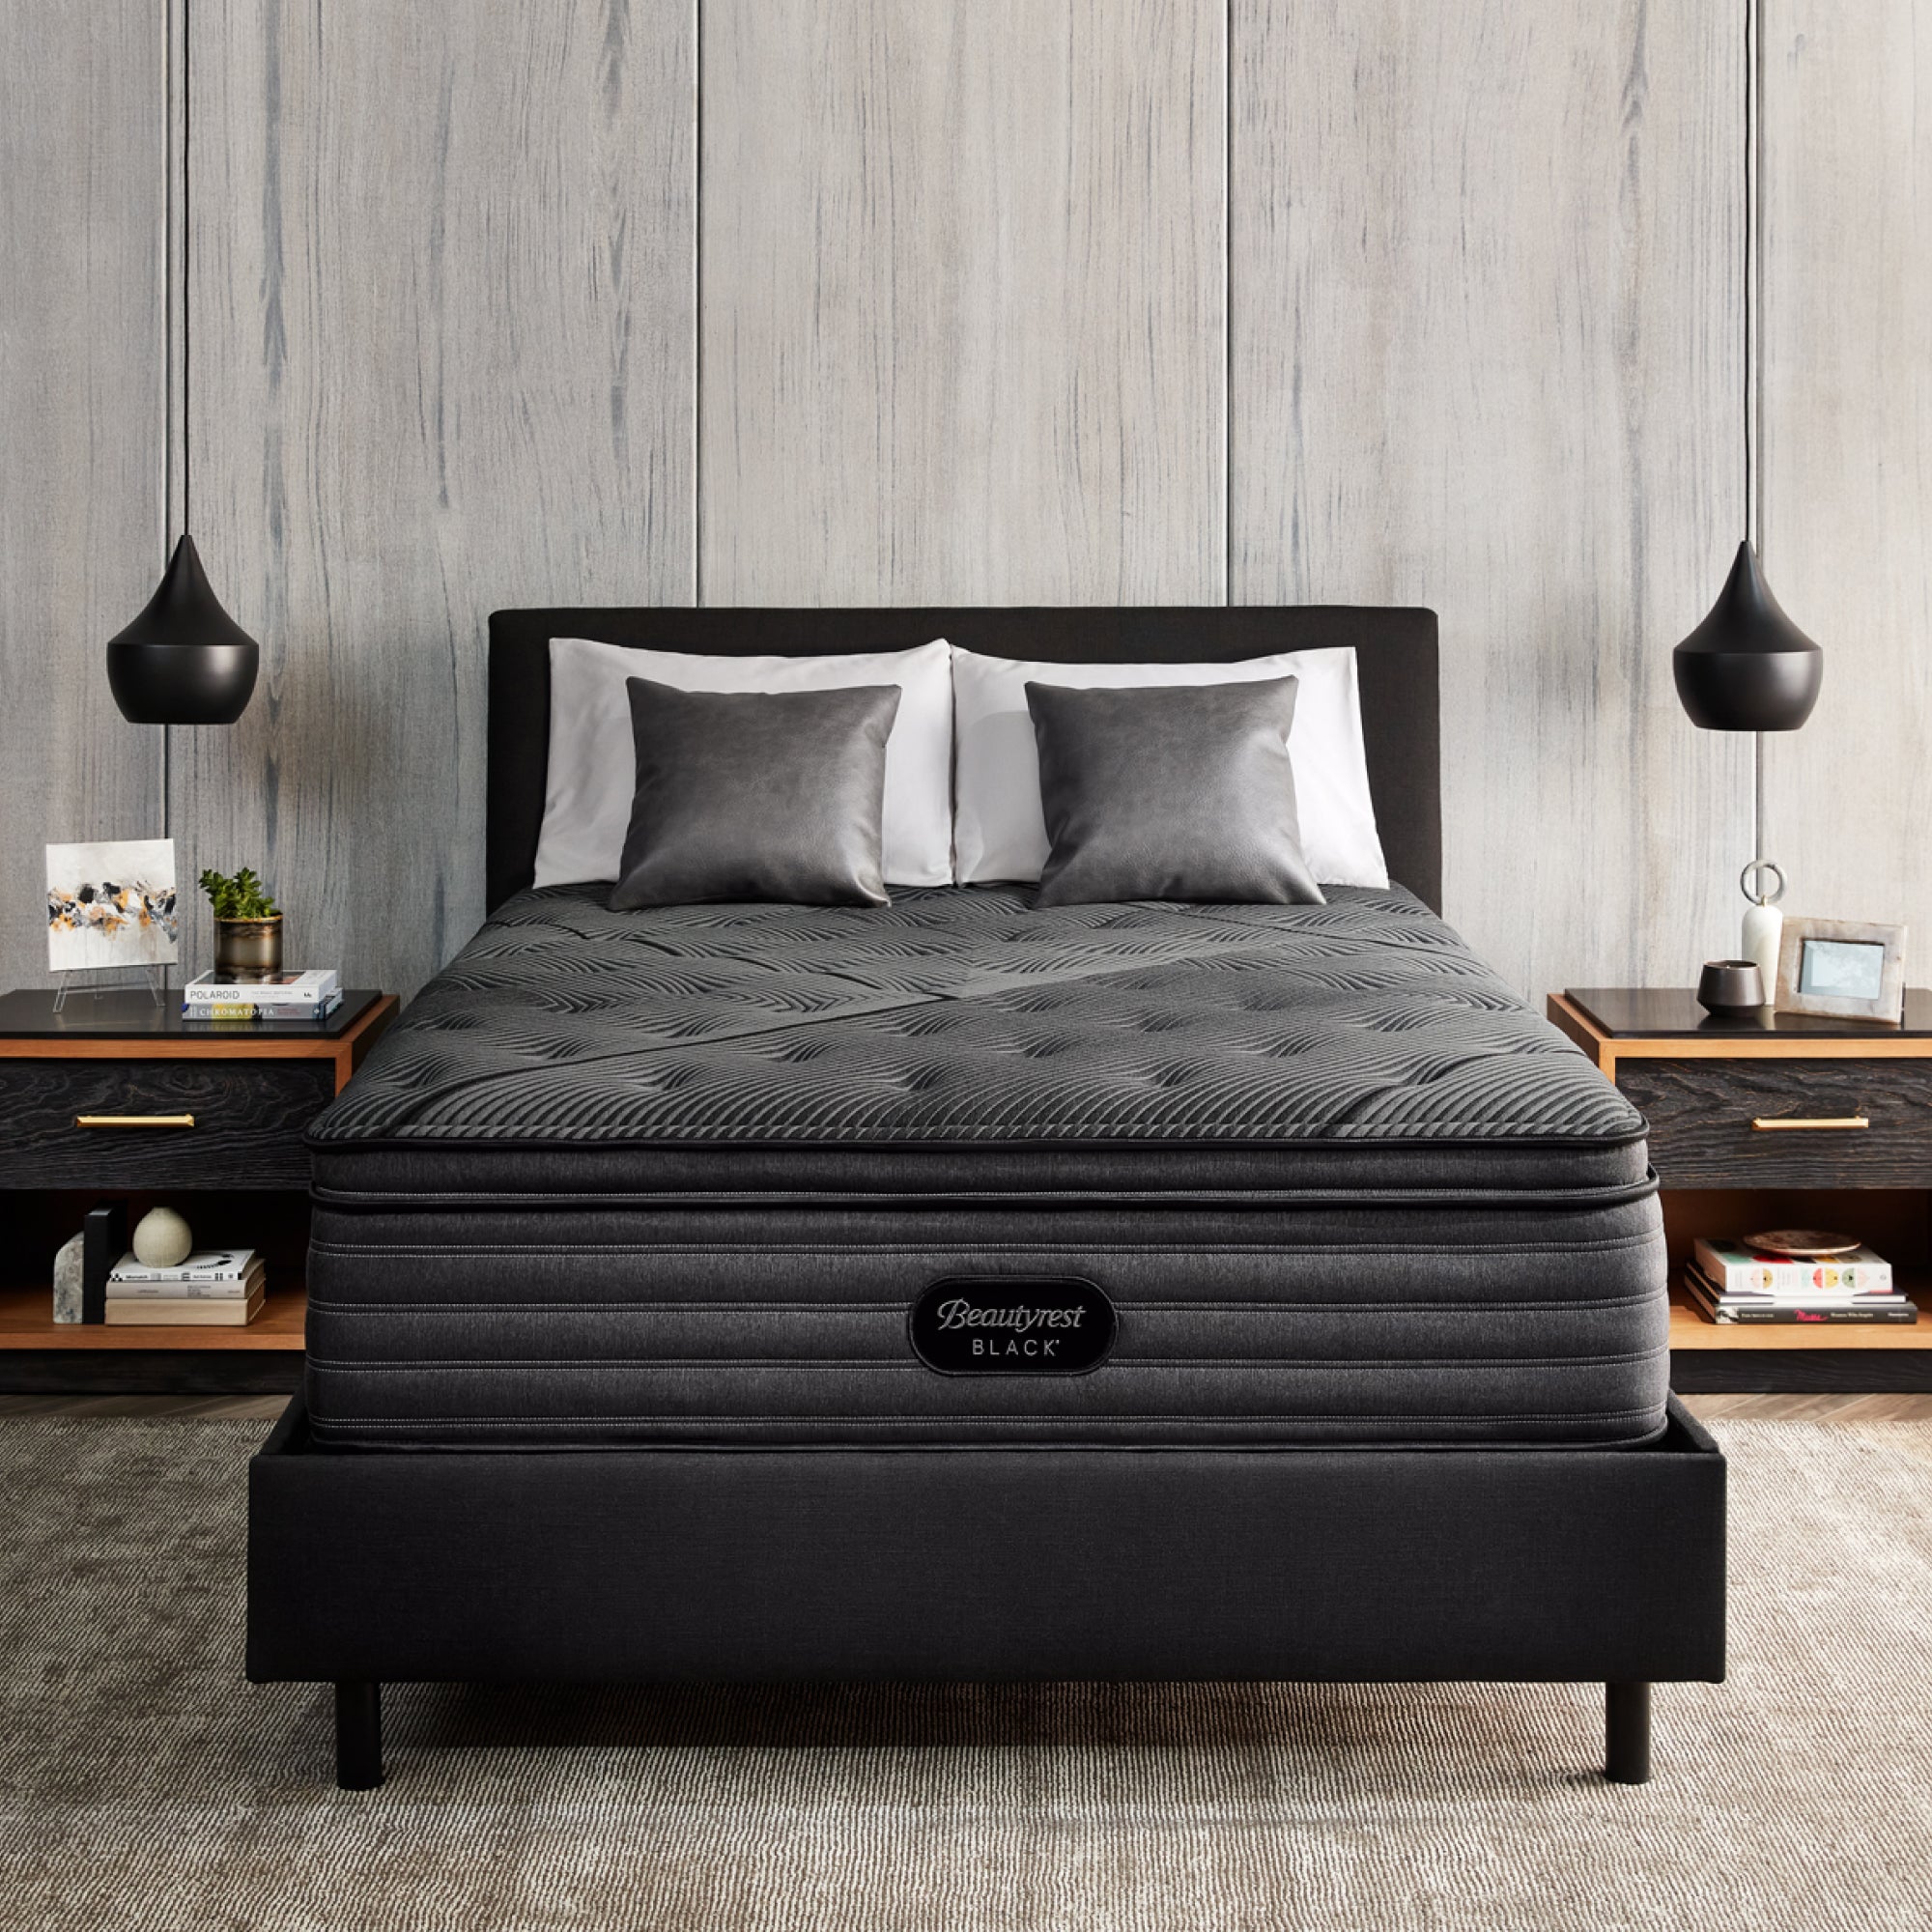 The Beautyrest Black enhanced l-class plush pillow top mattress in a bedroom||series: enhanced l-class || feel: plush pillow top